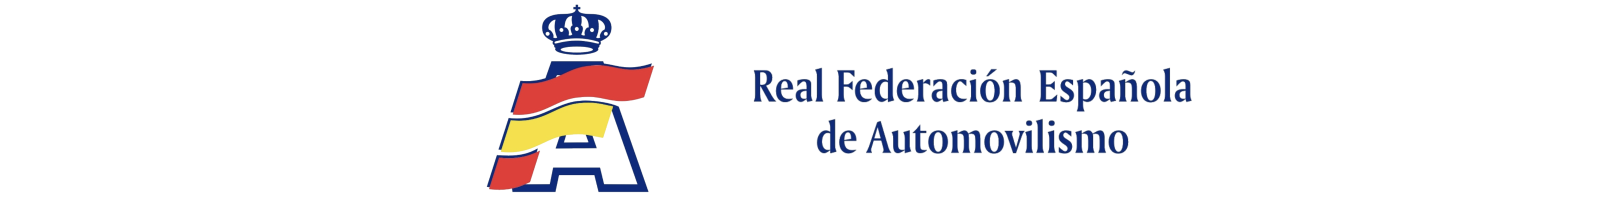 RFEDA › Real Federación Española de Automovilismo